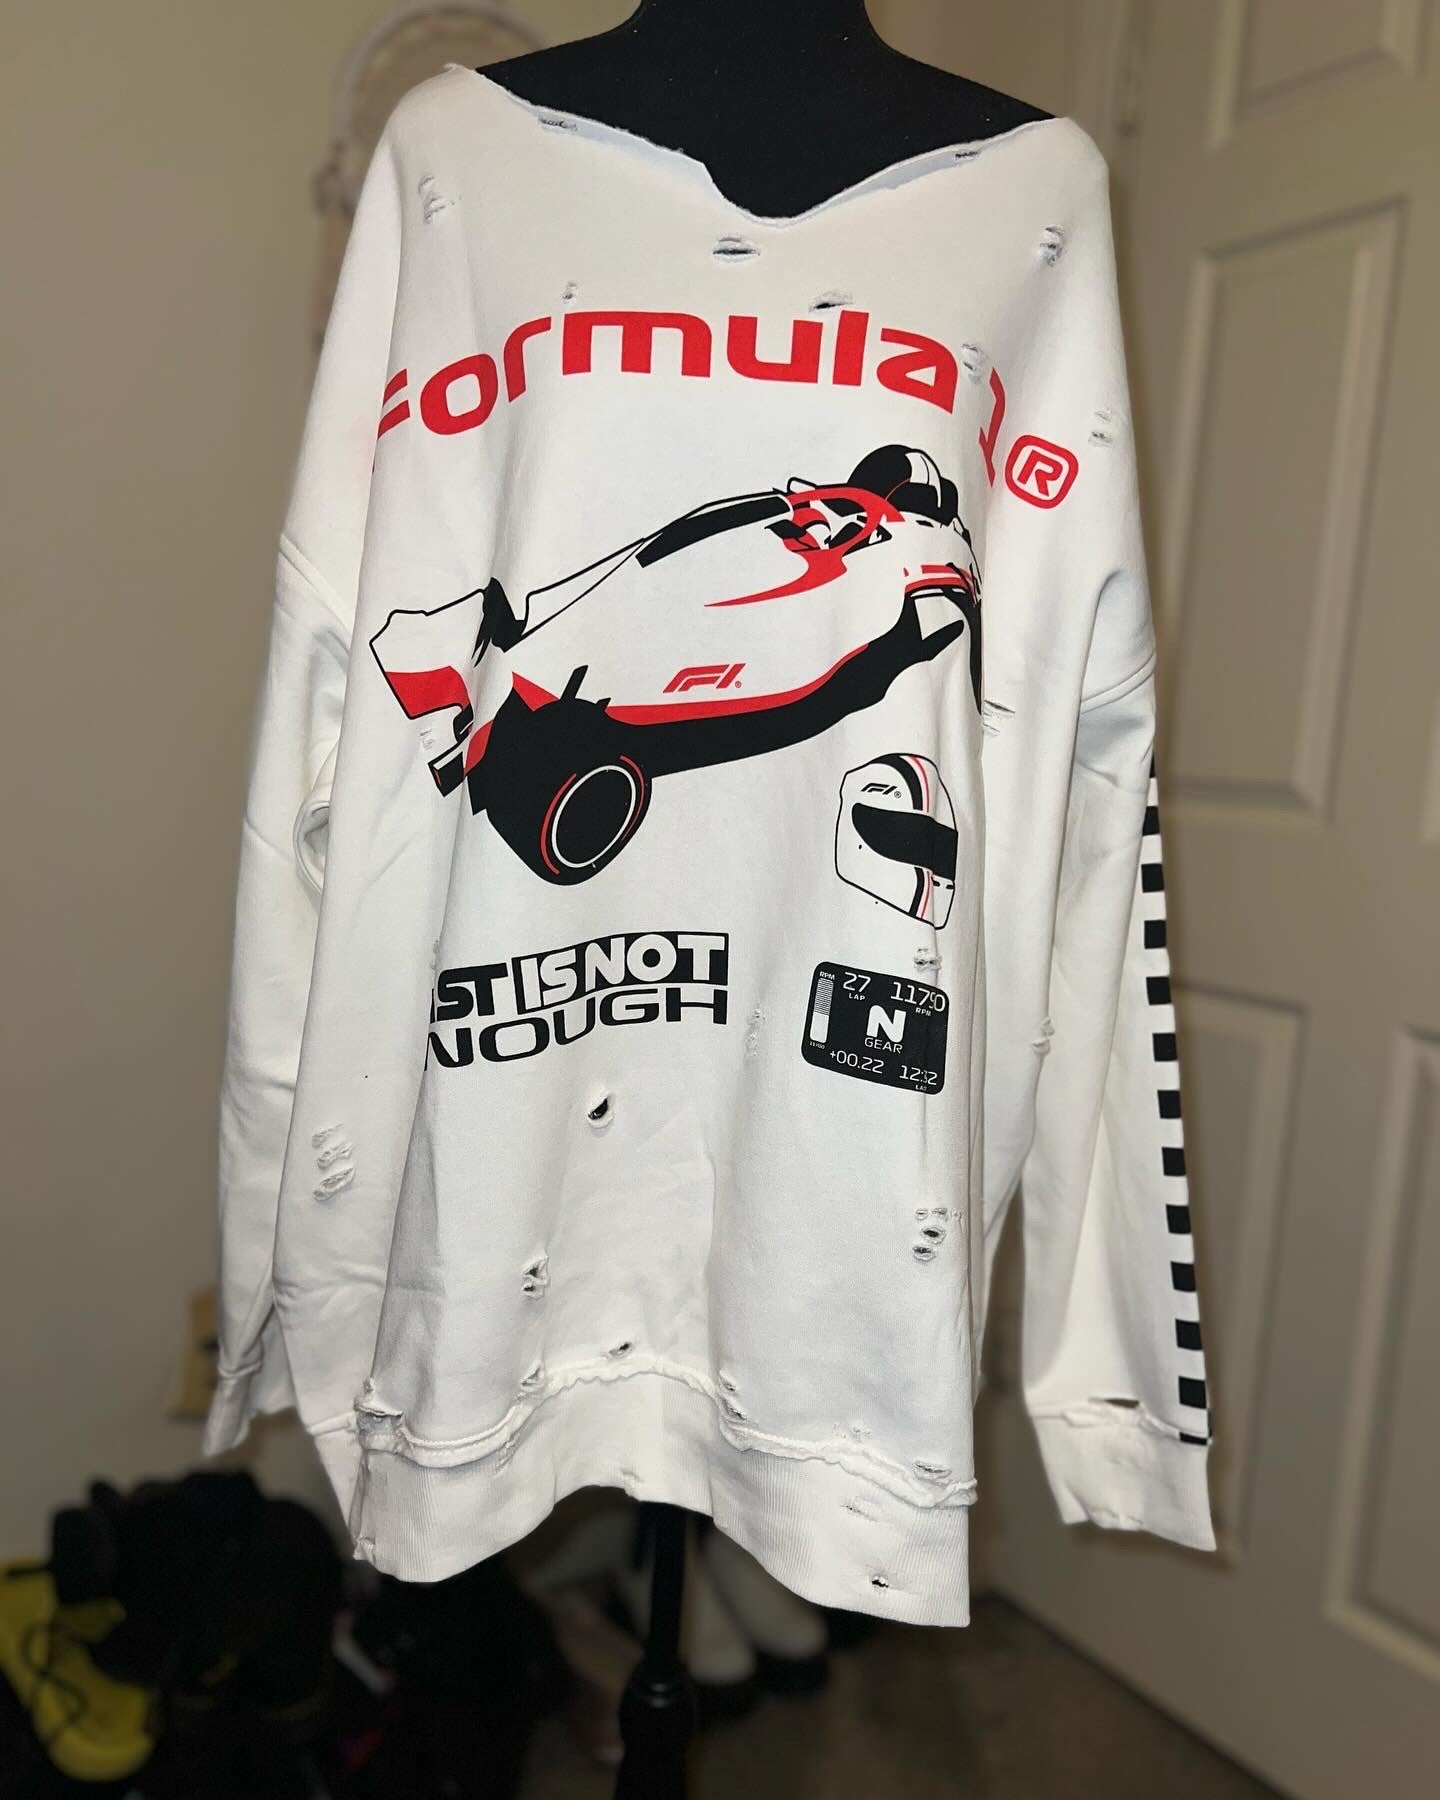 Formula 1 Oversized Sweatshirt